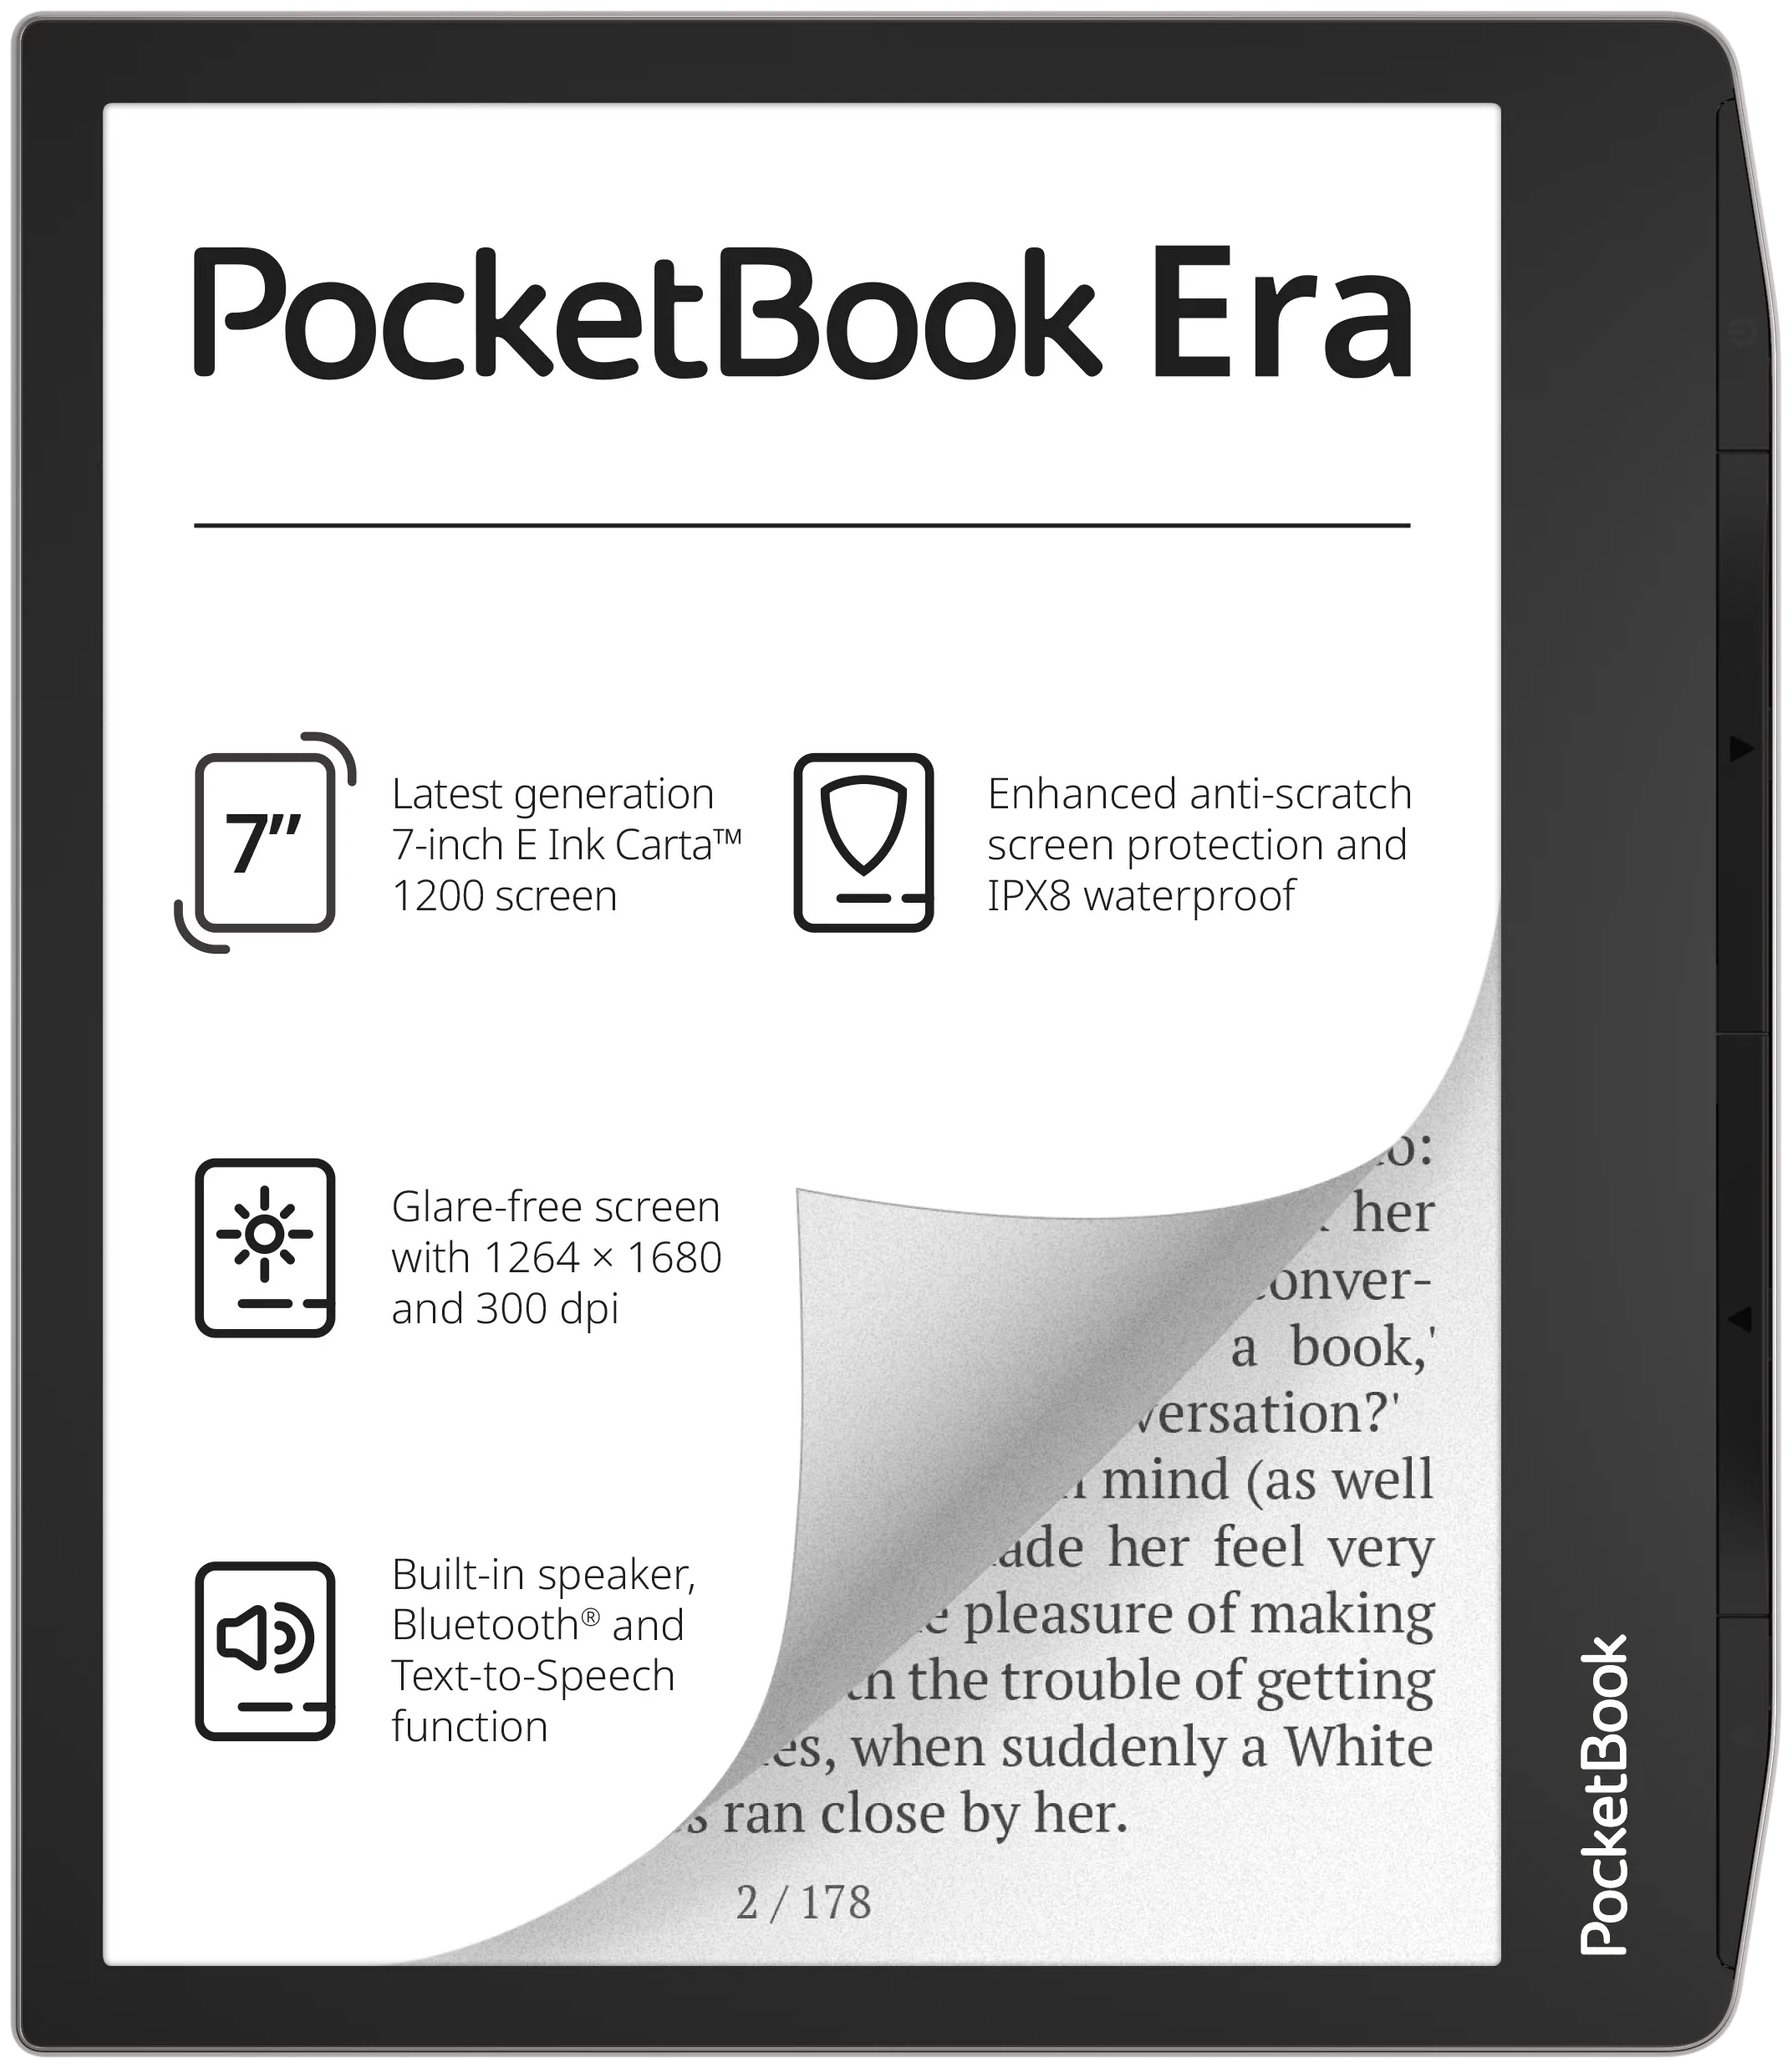 7" Электронная книга PocketBook Era 1680x1264, E-Ink, 16 ГБ, серебристый — купить в интернет-магазине по низкой цене на Яндекс Маркете